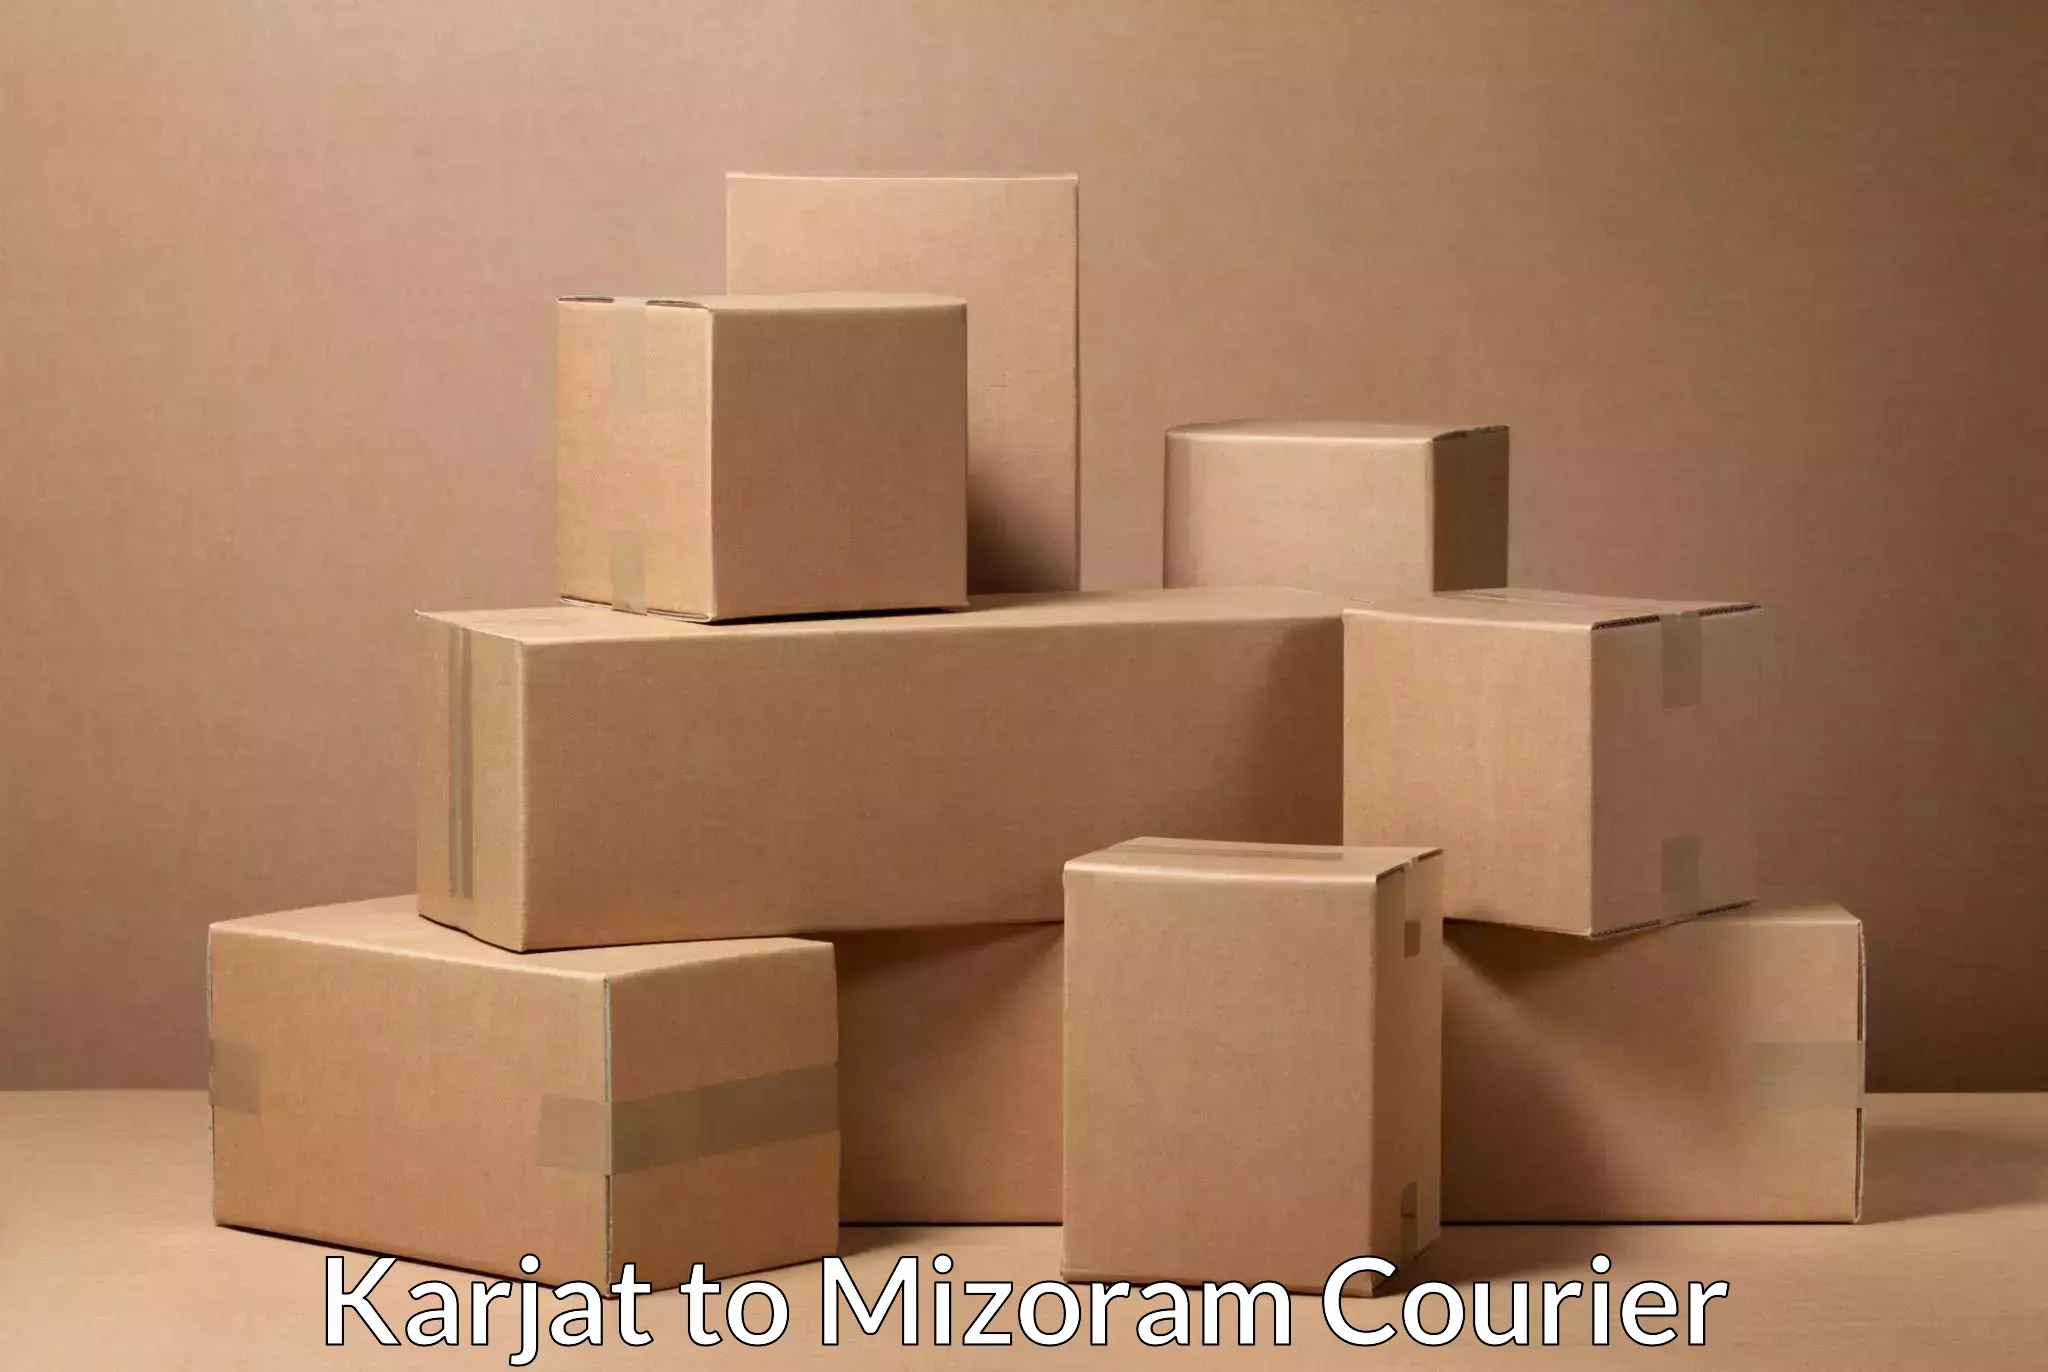 Express logistics providers Karjat to Mamit